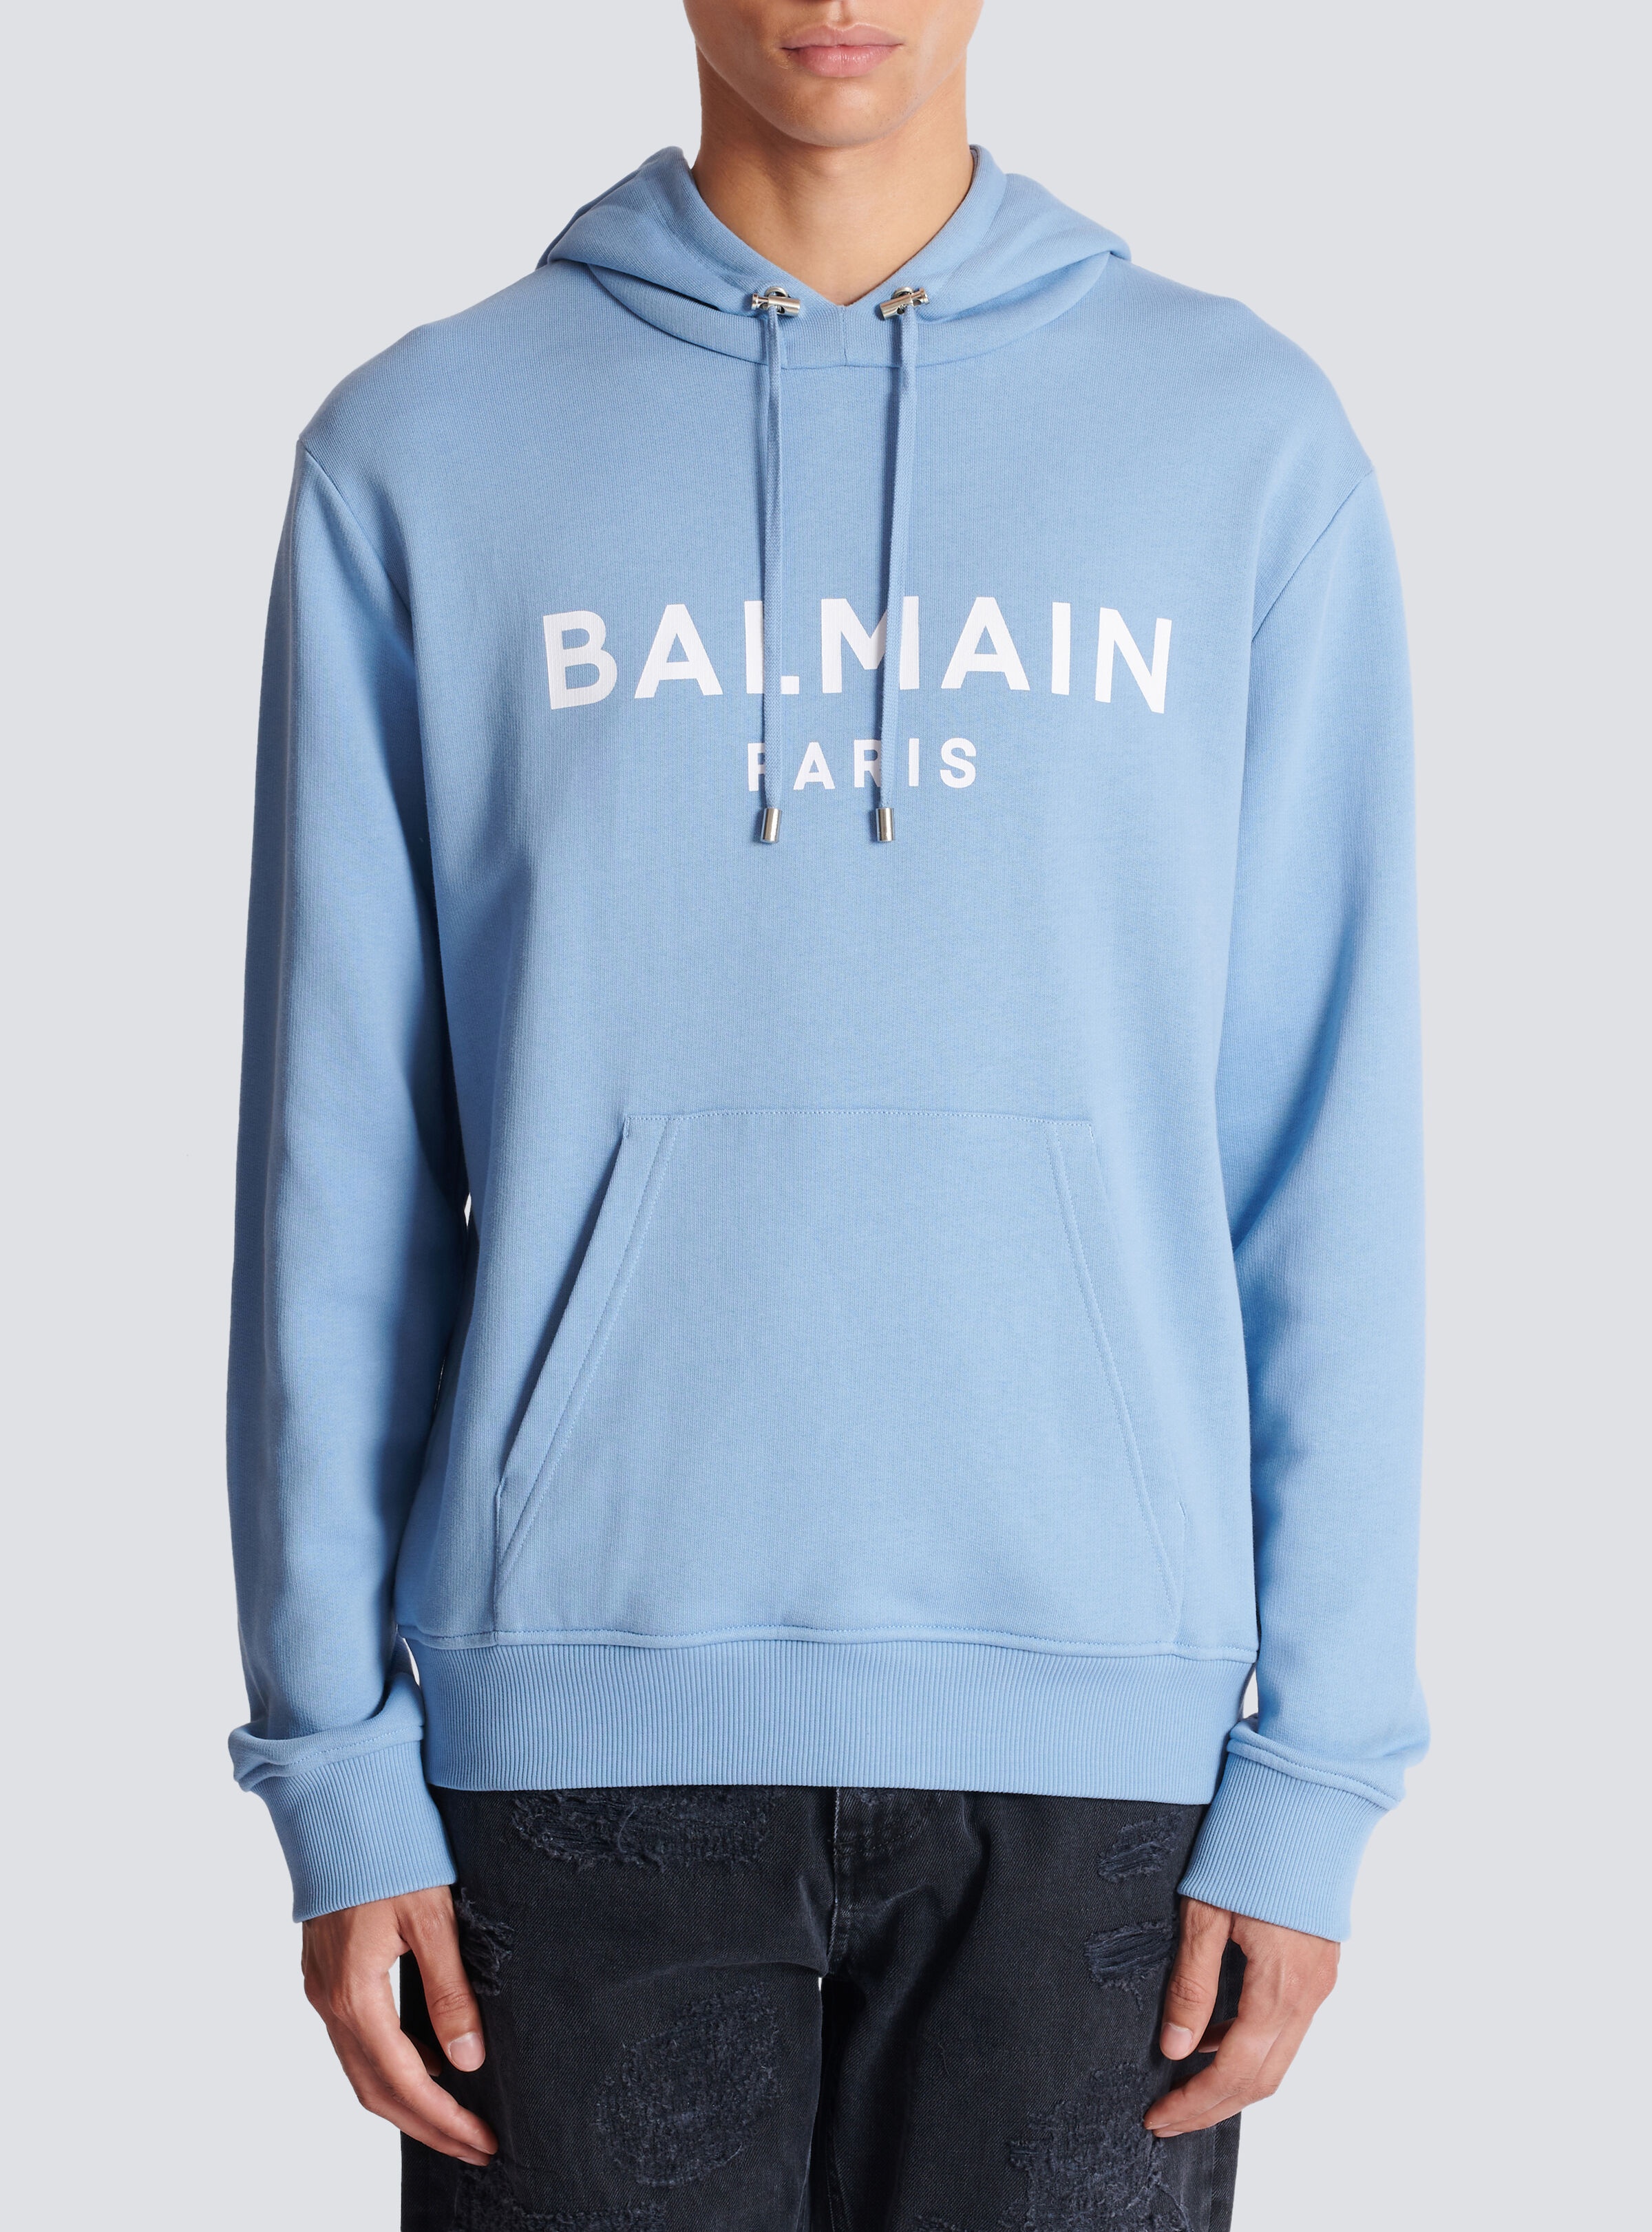 Balmain Paris hoodie - 5